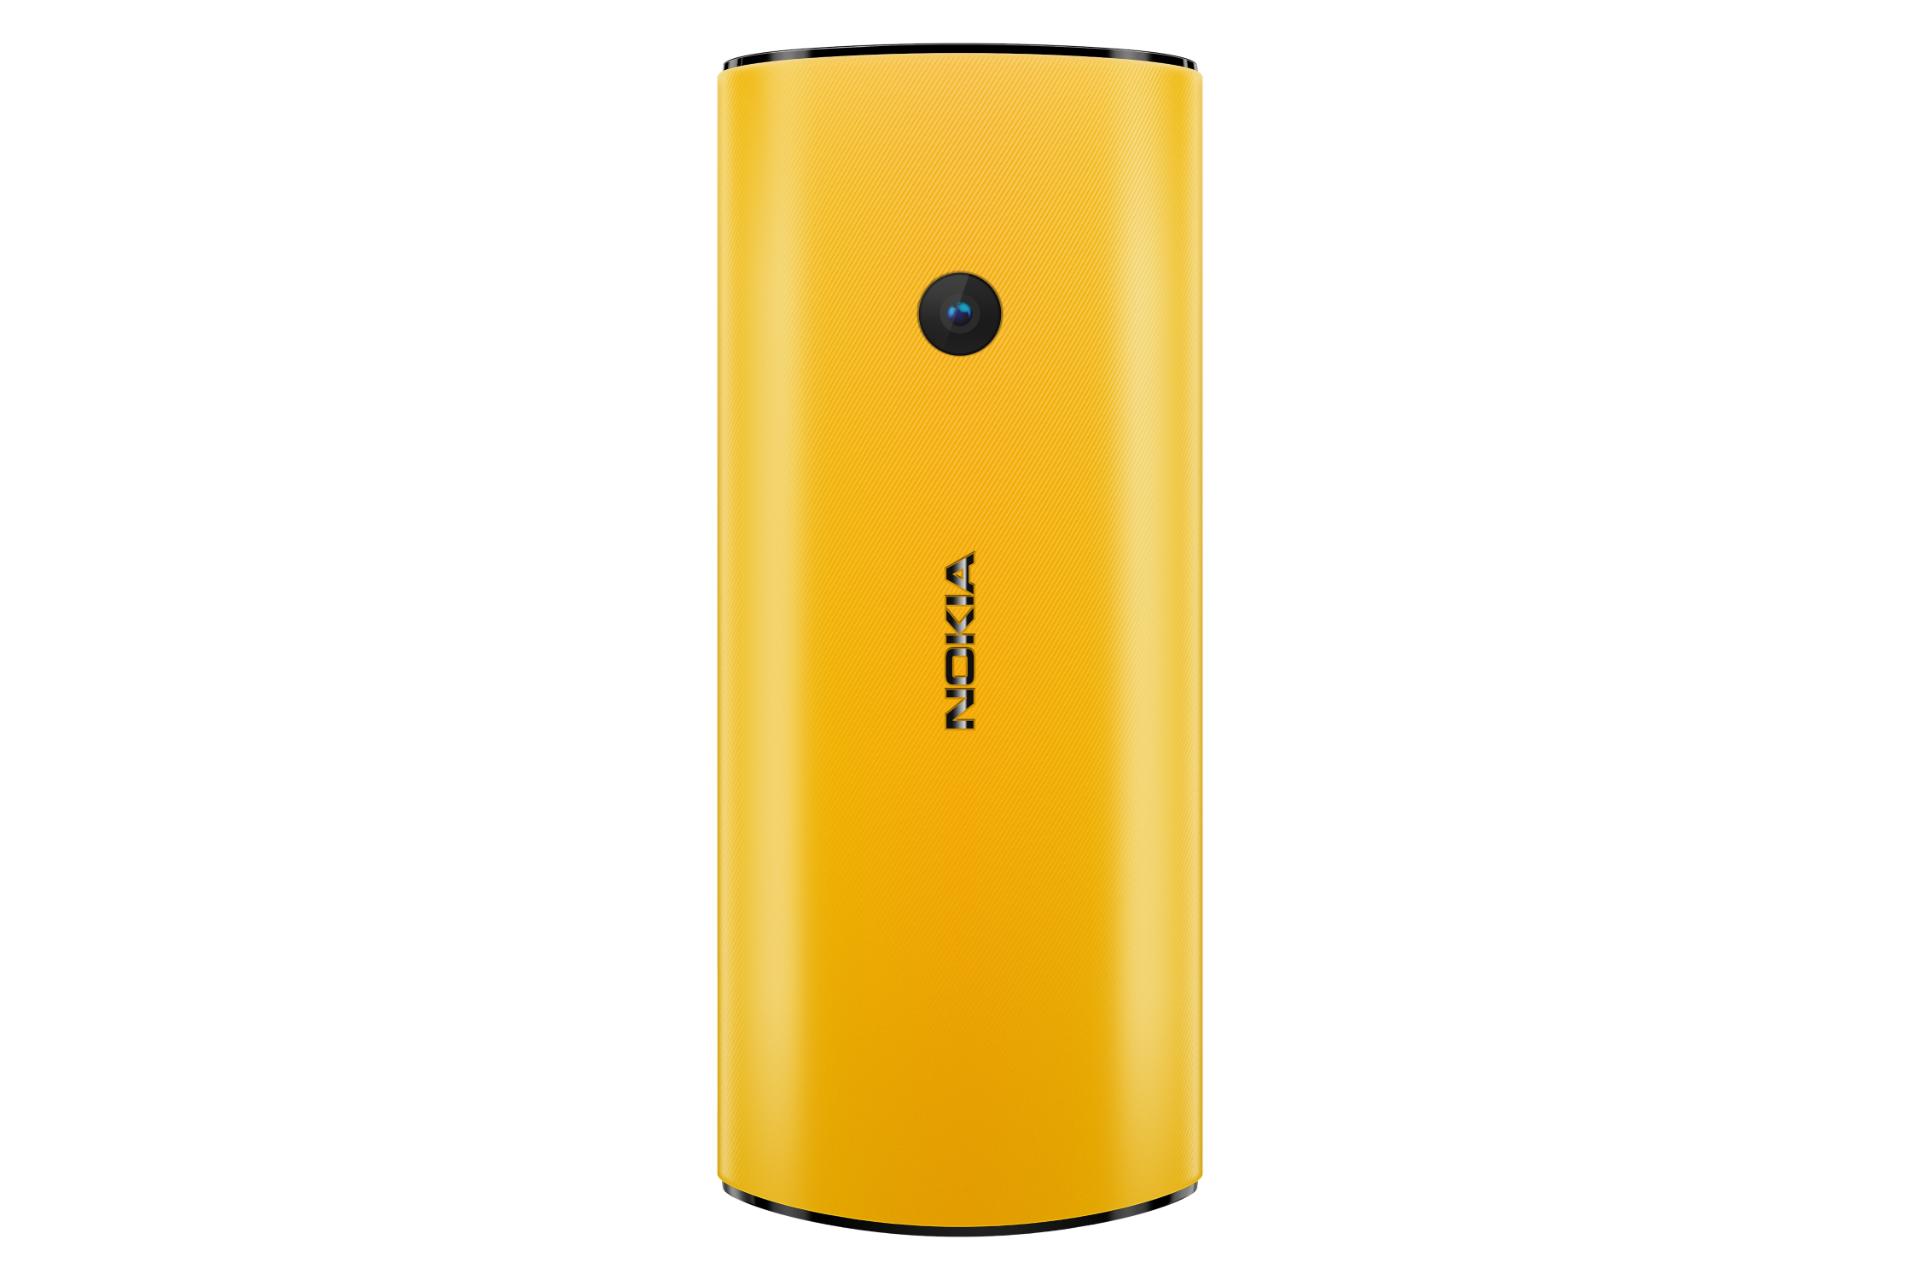 پنل پشت Nokia 110 4G موبایل نوکیا 110 نسخه 4G زرد